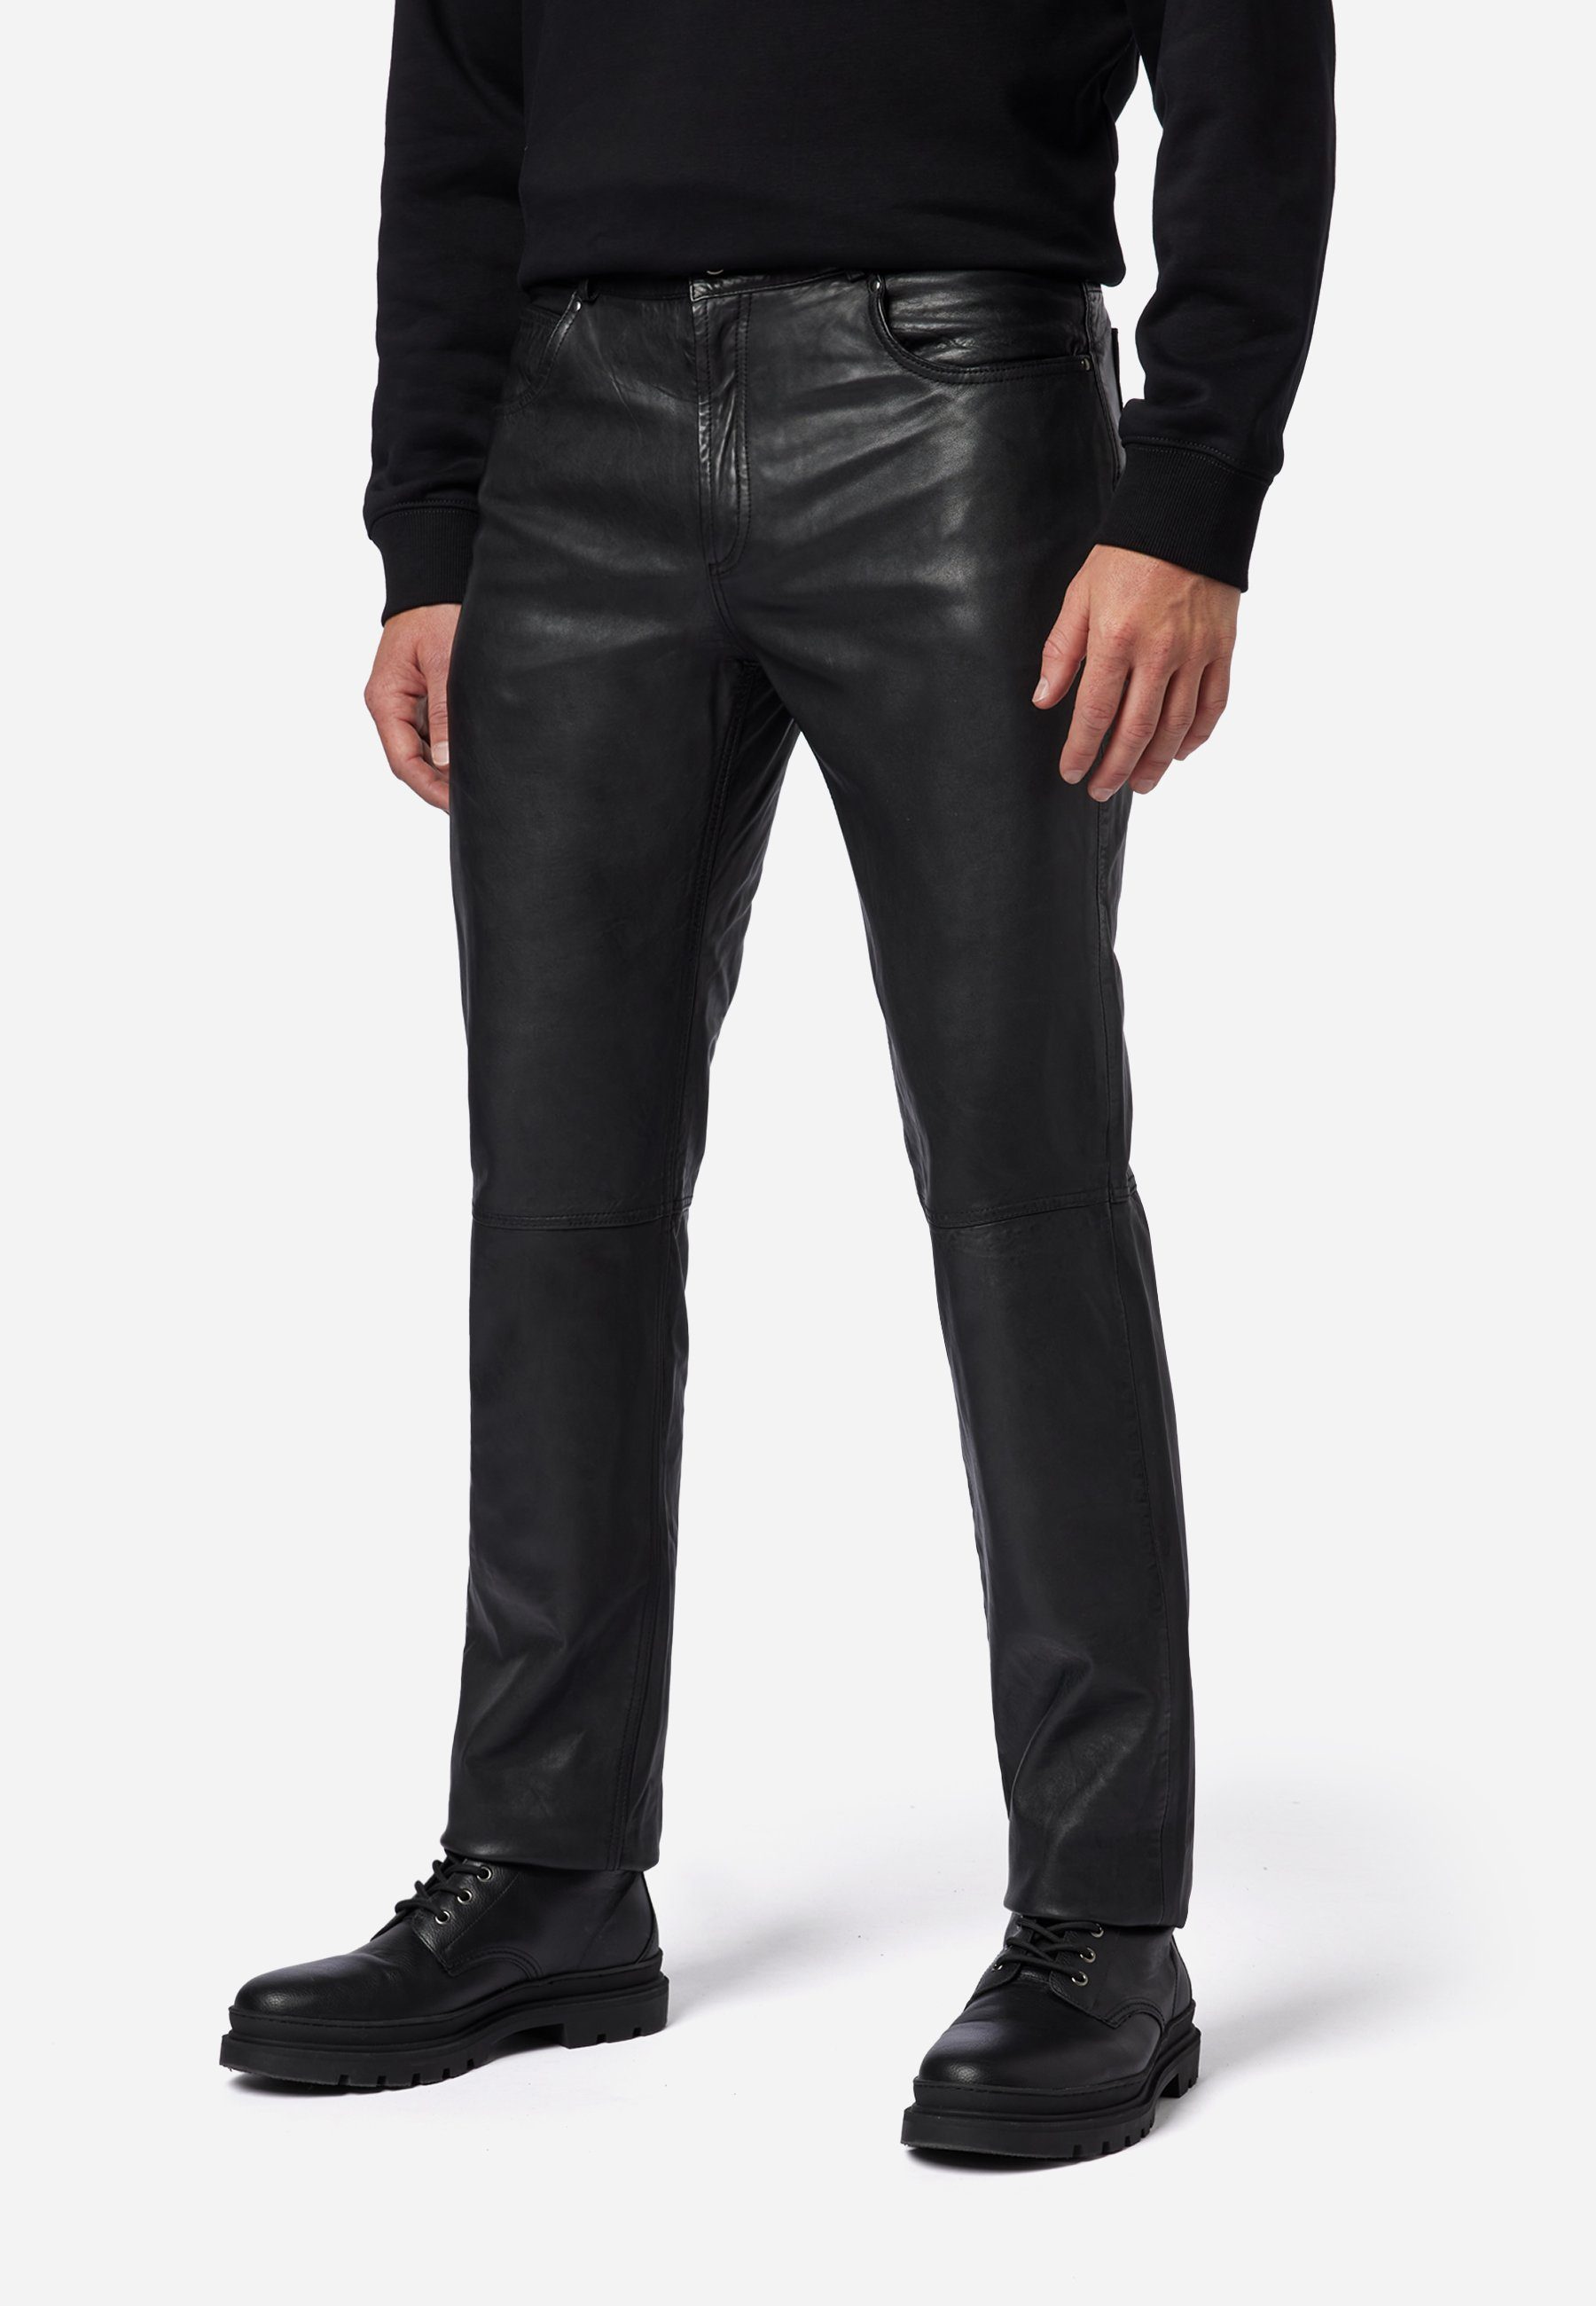 Schwarz 5-Pocket Pant Leder; RICANO Lederhose Hochwertiges Trant Jeans-Optik Lamm-Nappa